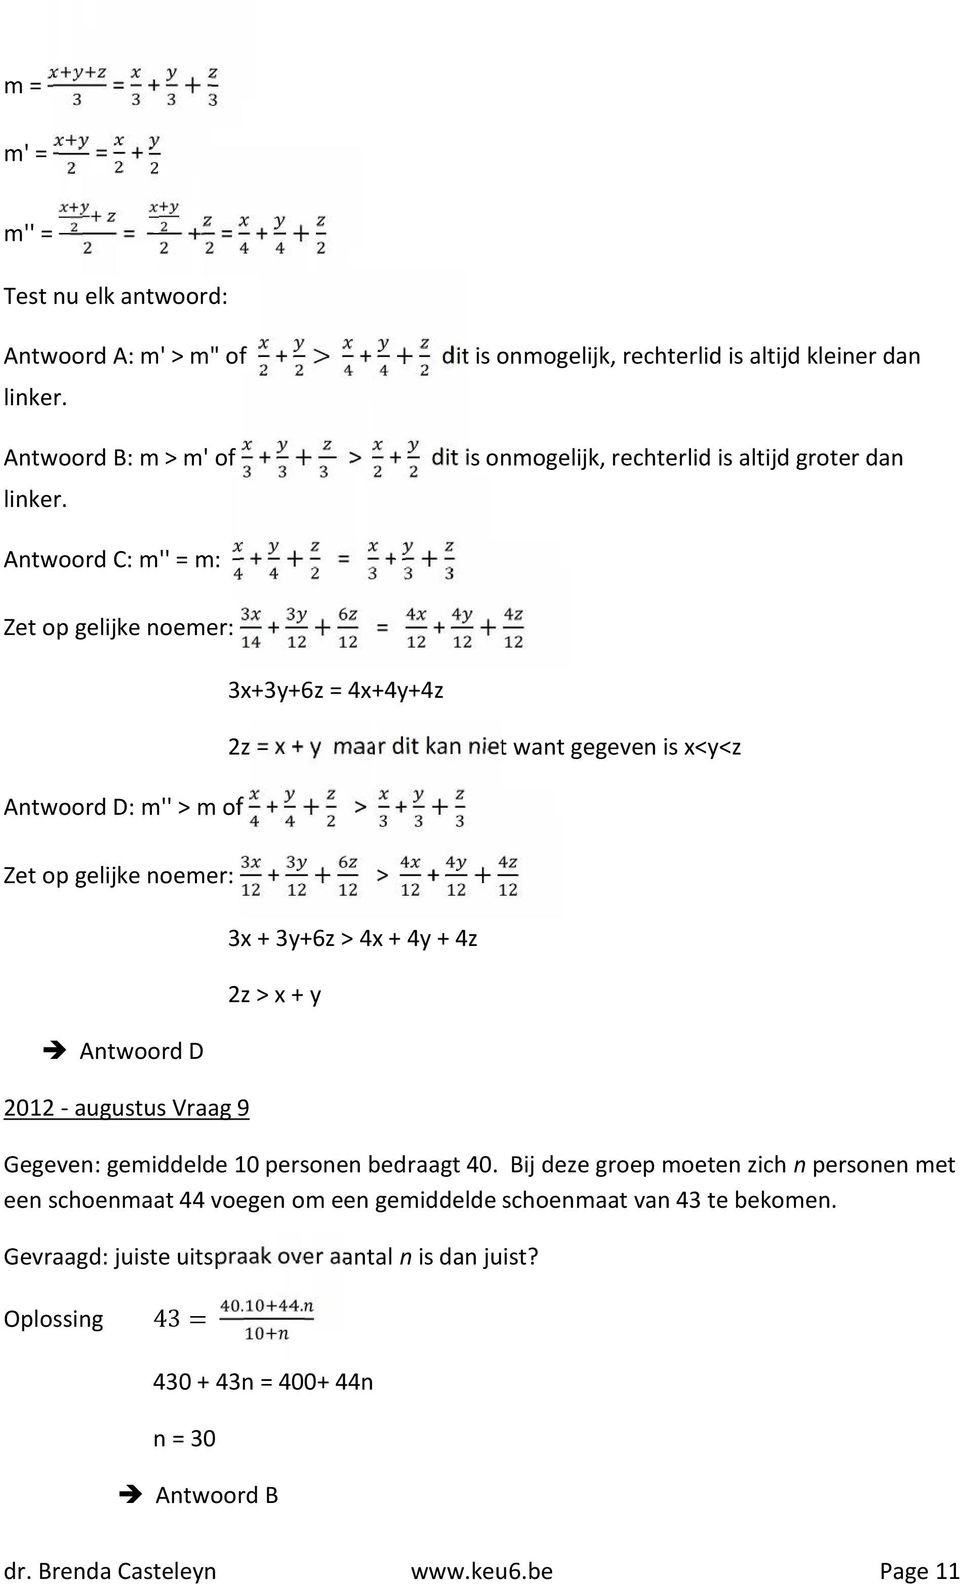 Antwoord C: m'' = m: + + = + + Zet op gelijke noemer: + + = + + 3x+3y+6z = 4x+4y+4z Antwoord D: m'' > m of + + > + + 2z = x + y maar dit kan niet want gegeven is x<y<z Zet op gelijke noemer: + + > +